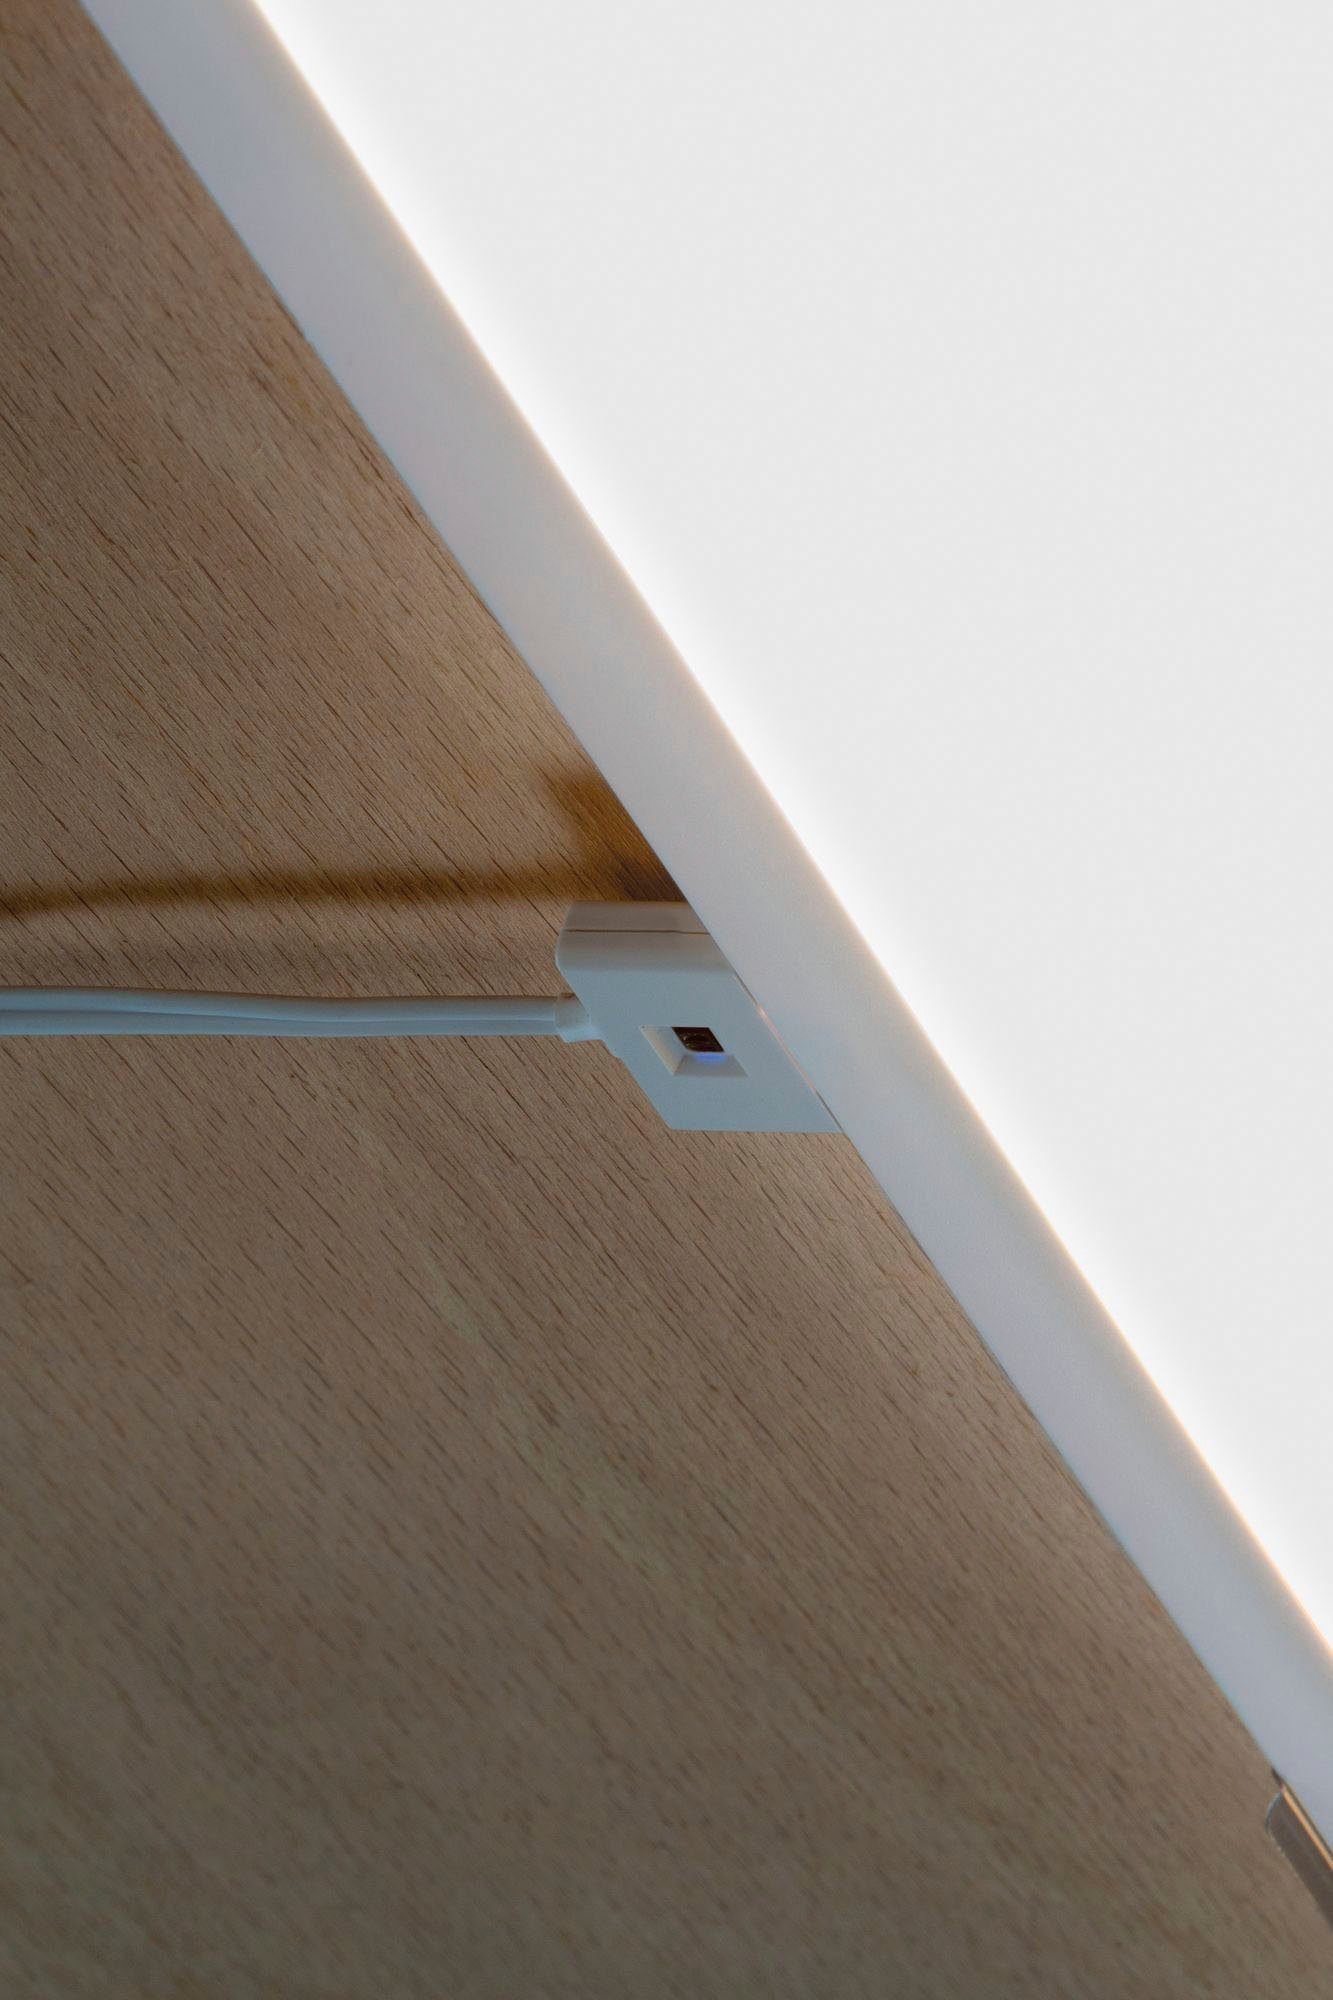 10x30cm Ace Unterschrank-Panel 10x30cm Unterschrankleuchte integriert, LED Unterschrank-Panel Weiß LED Ace LED Basisset, 7,5W Weiß 7,5W Basisset fest Warmweiß, Paulmann